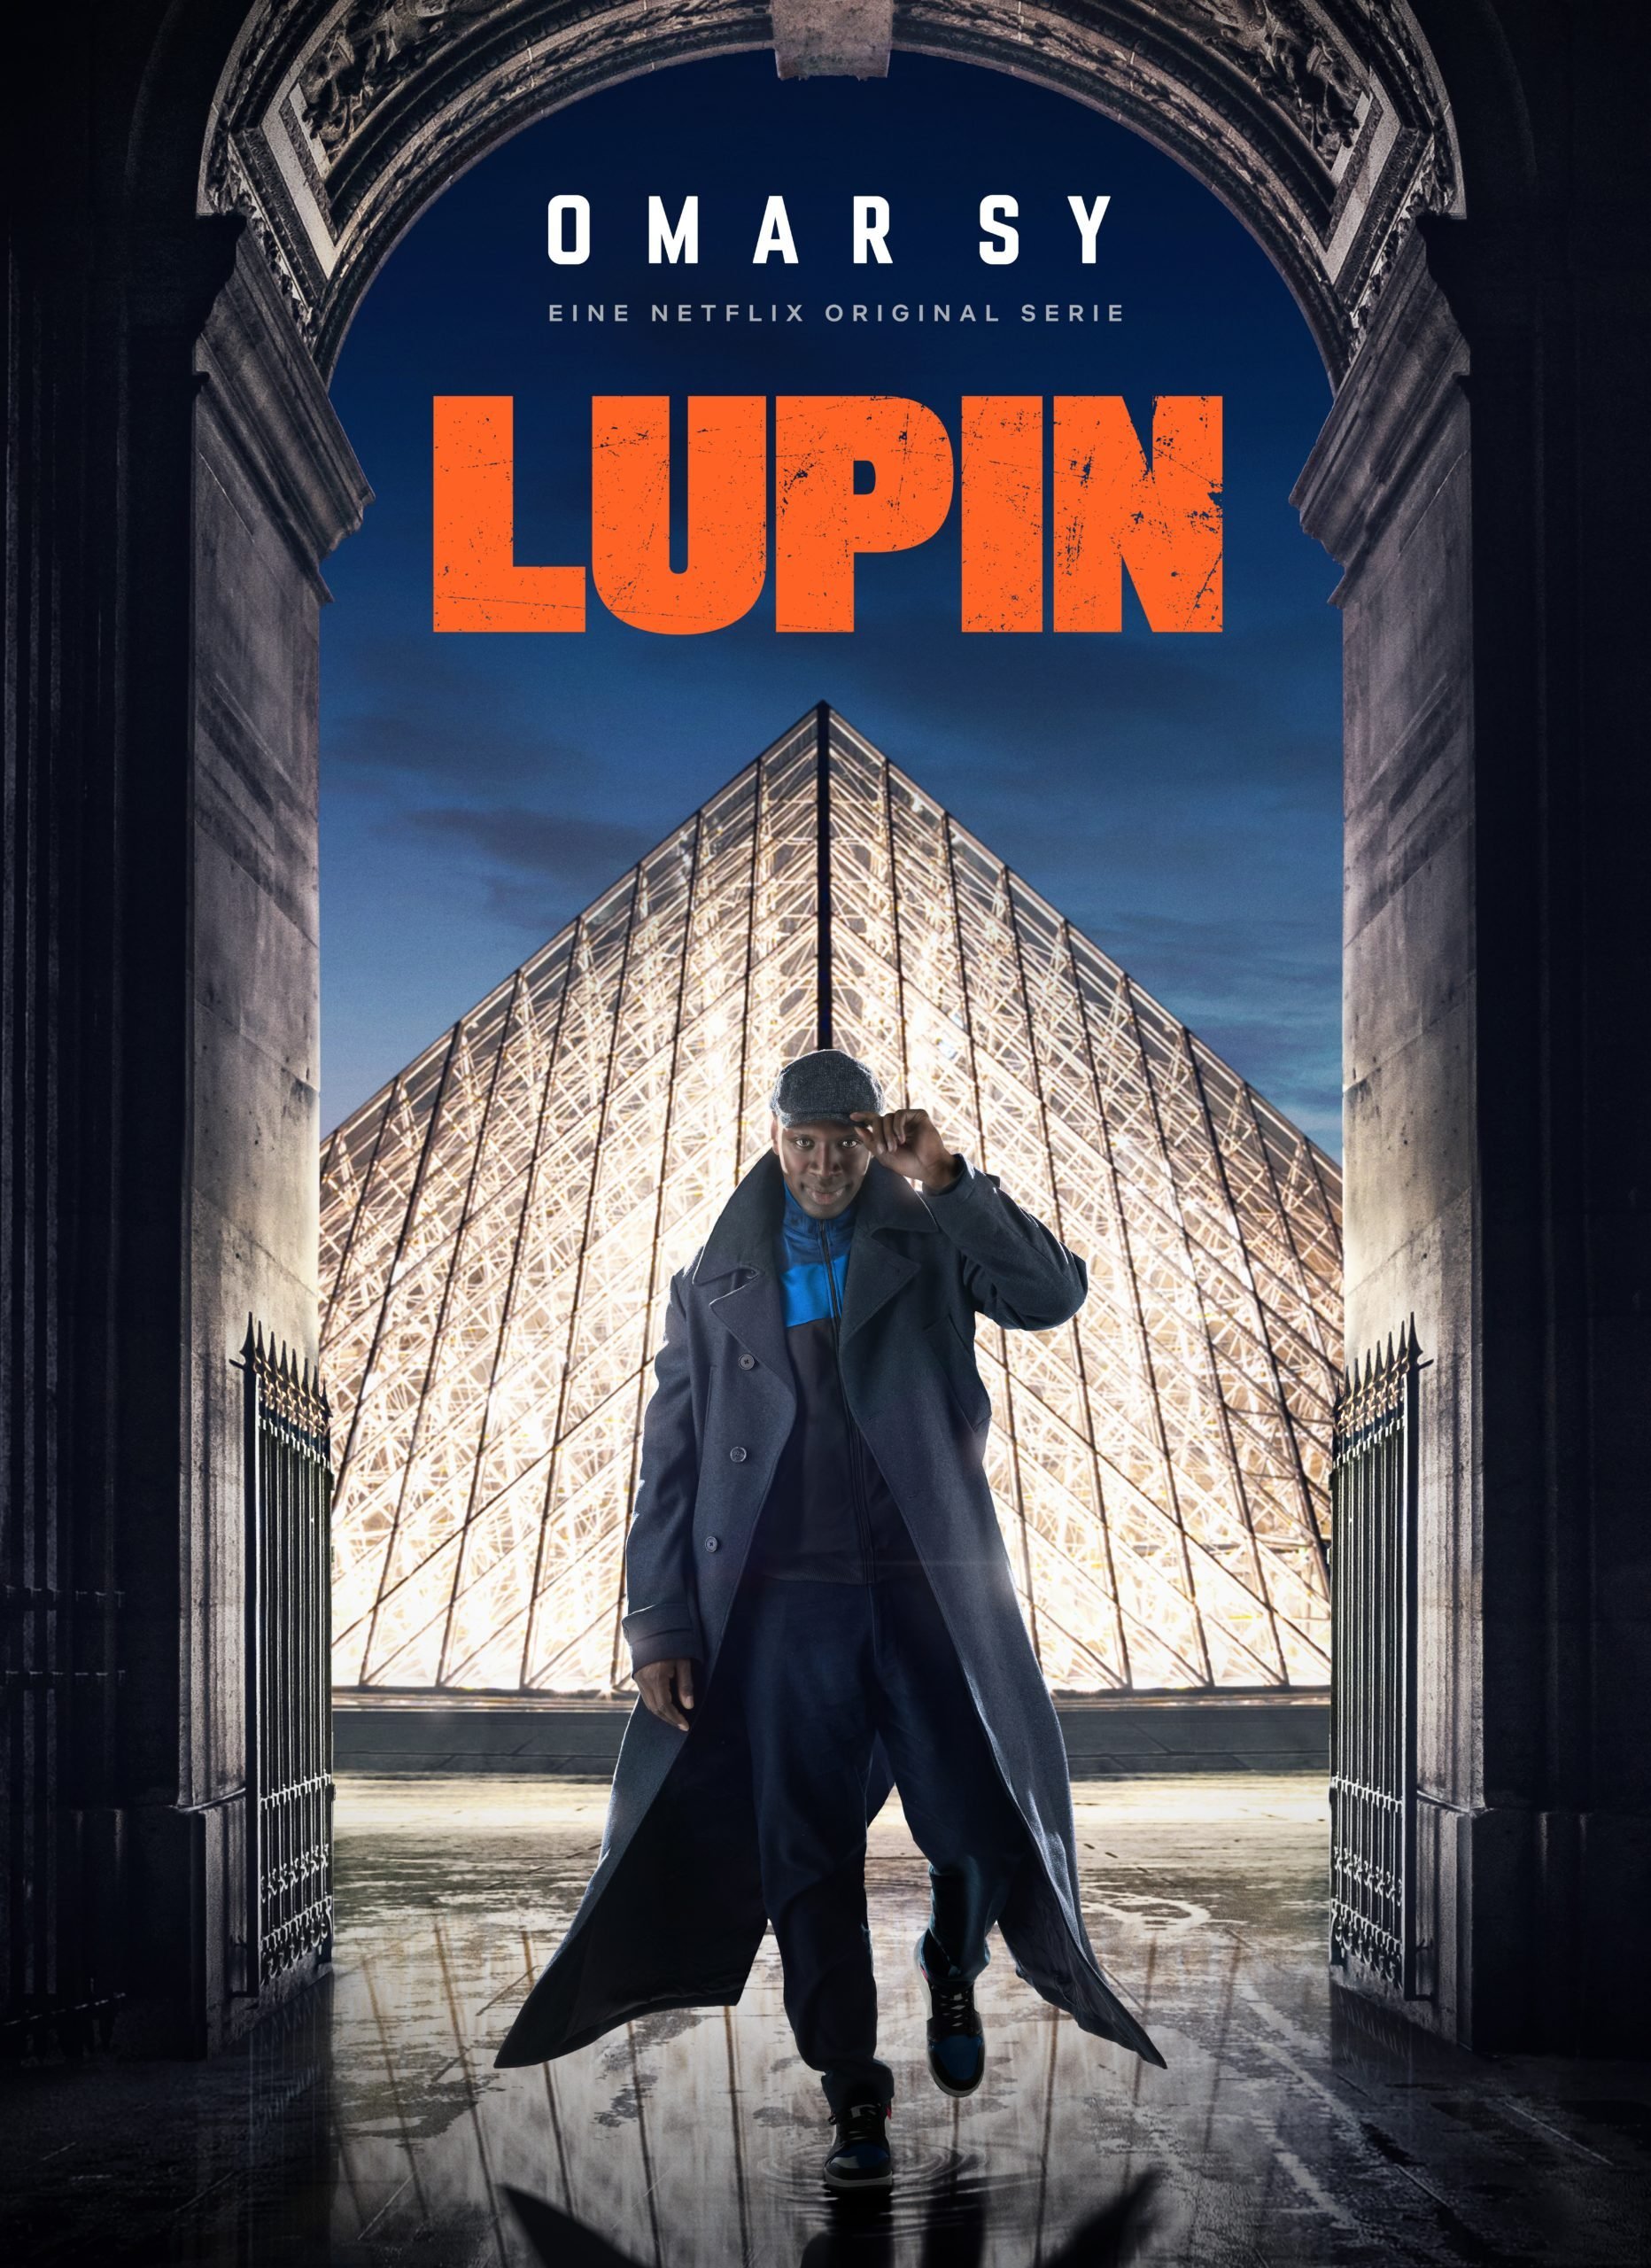 [Critique] Lupin : Omar Sy cambriole nos cÅ